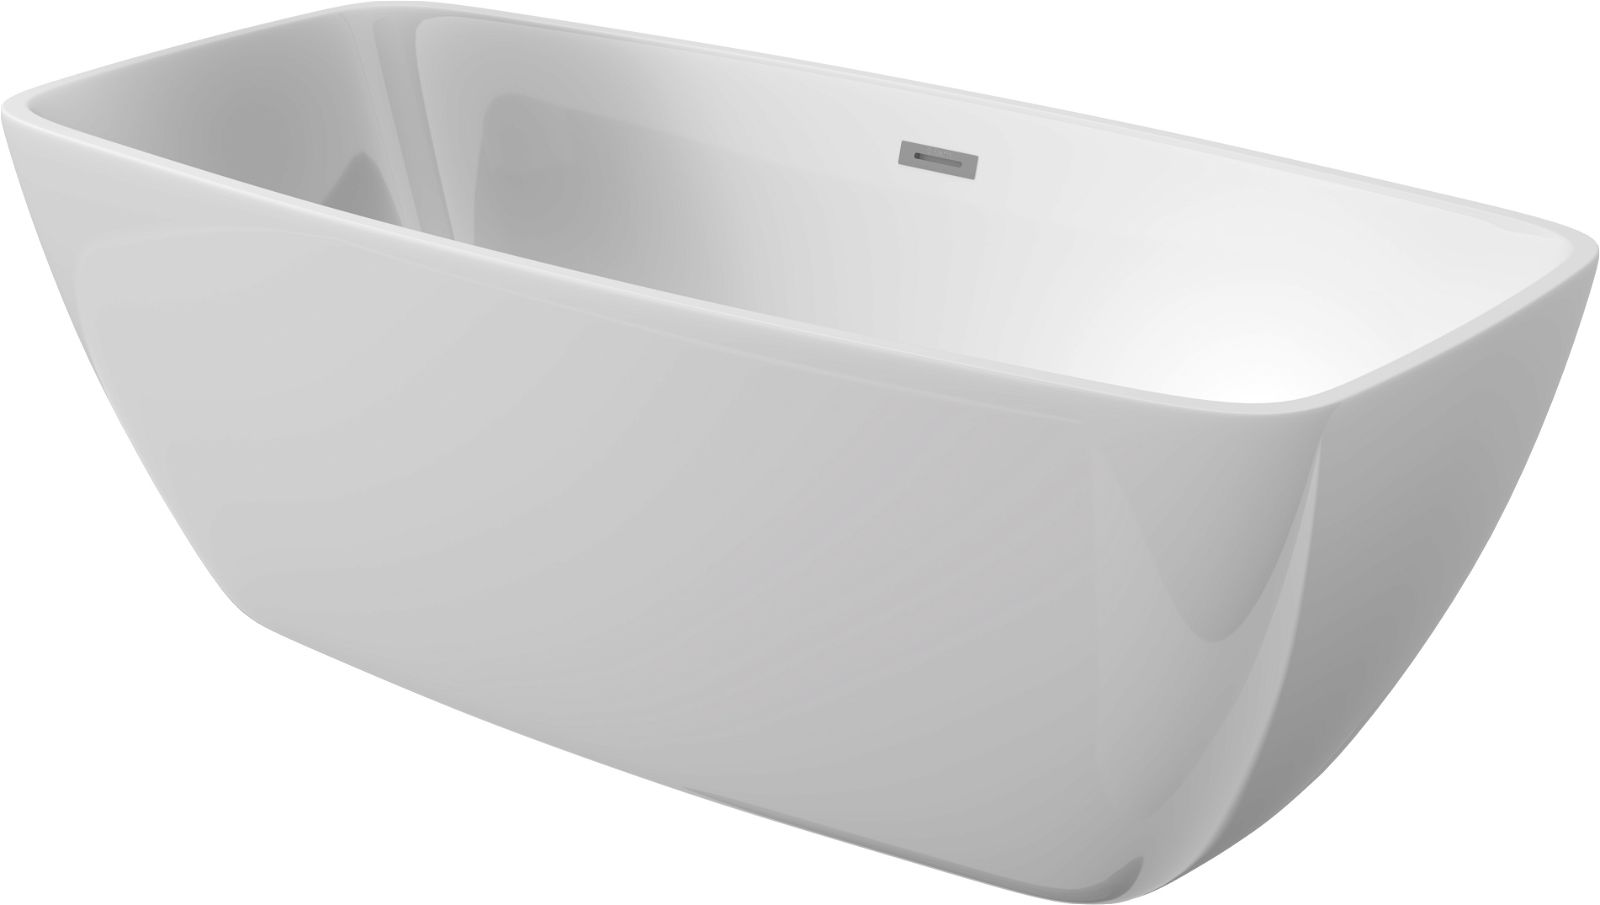 Acrylic bathtub, freestanding, rectangular - 170 cm - KDM_017W - Główne zdjęcie produktowe